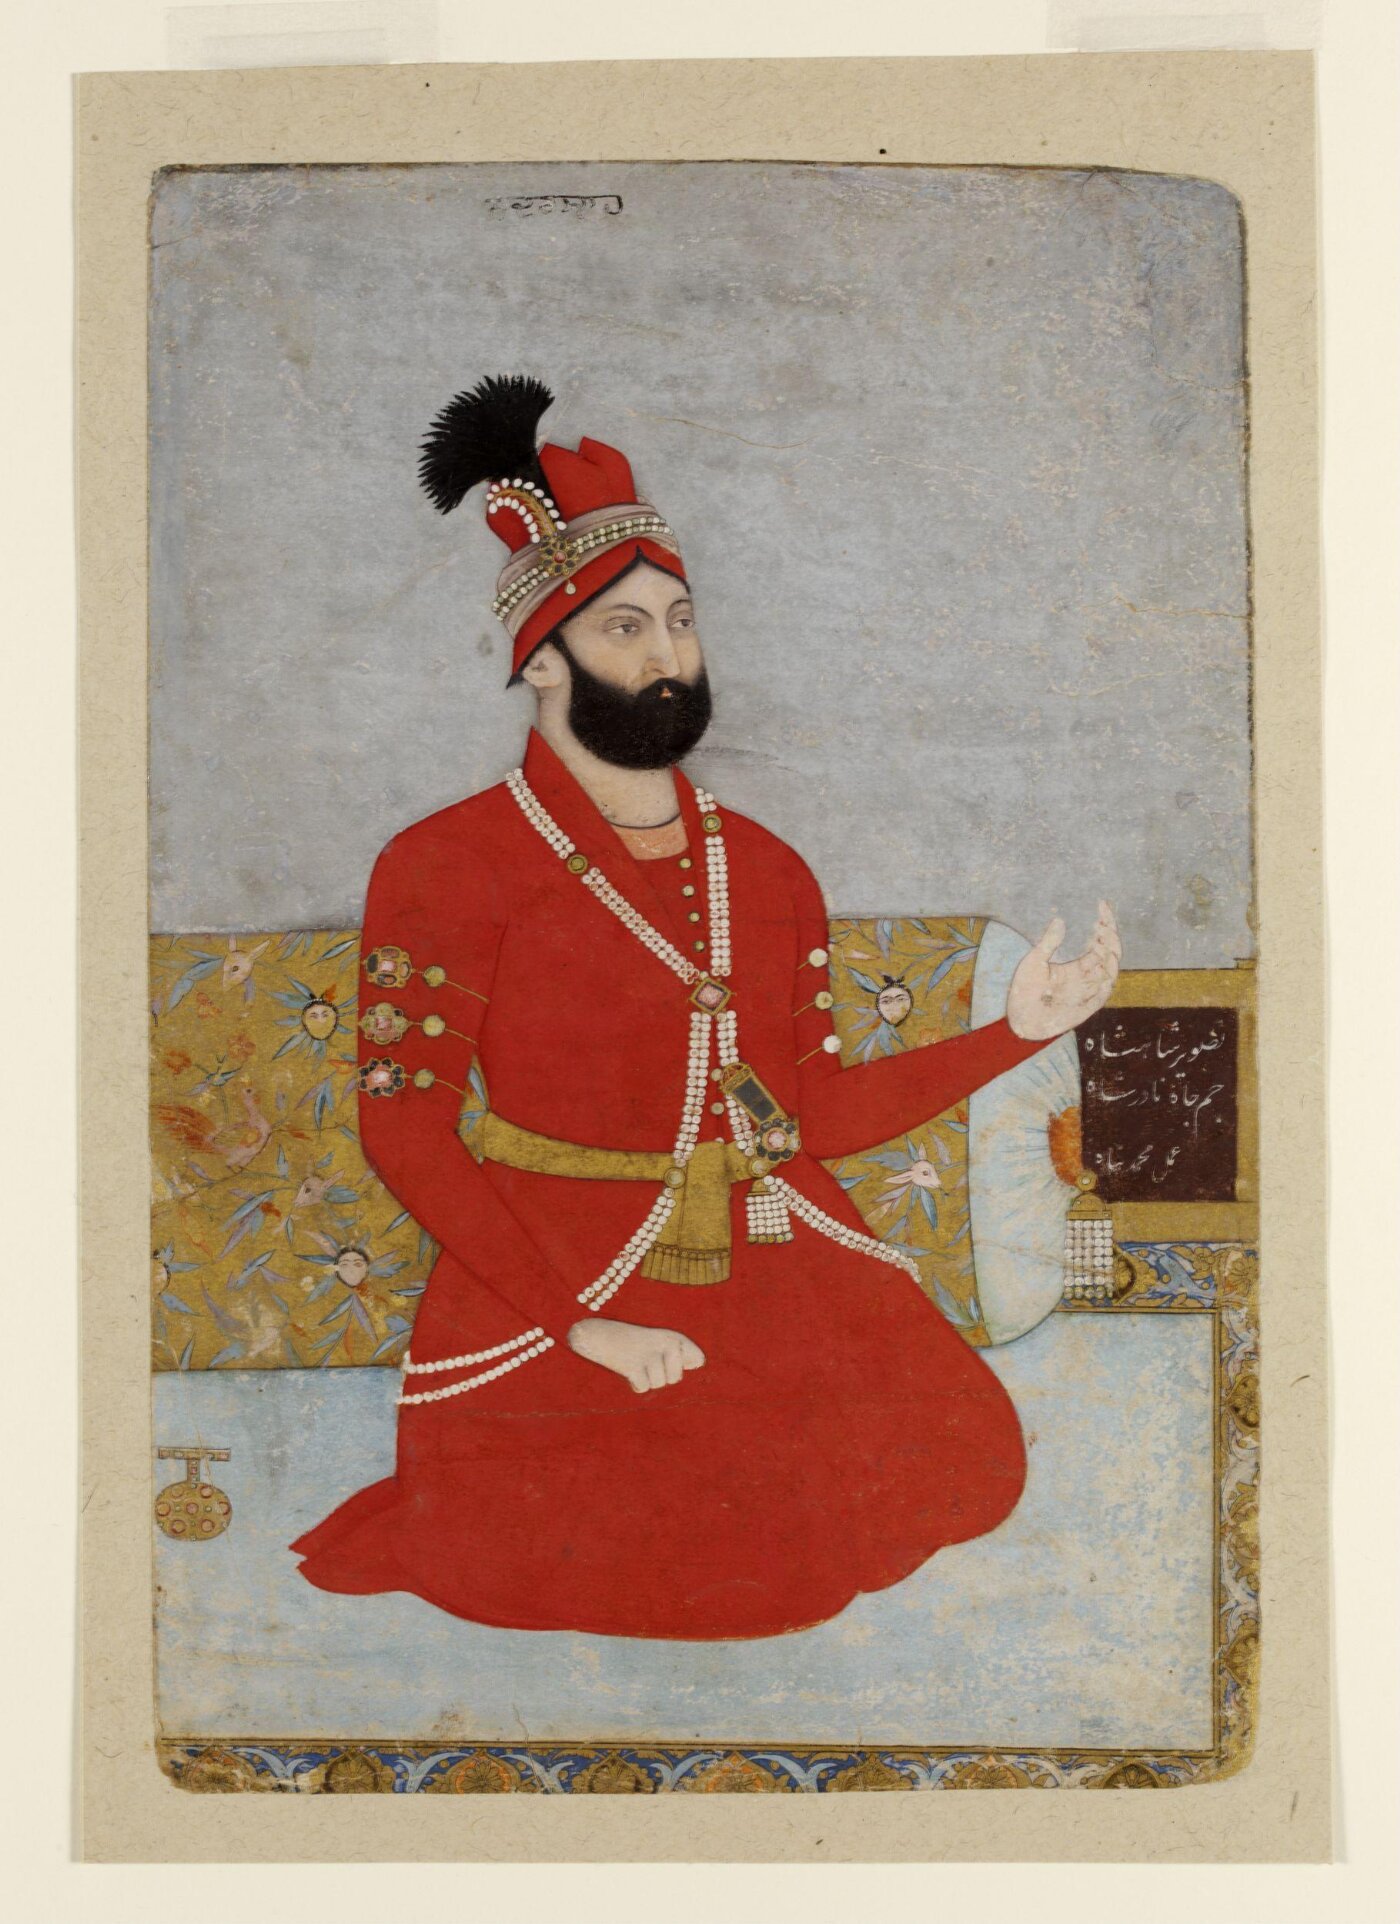 नादिर शाह ऑफ ईरान (ईरान के नादिर शाह) by Muhammad Panah - लगभग 1740 - 16.5 x 15.5 सेंटीमीटर 